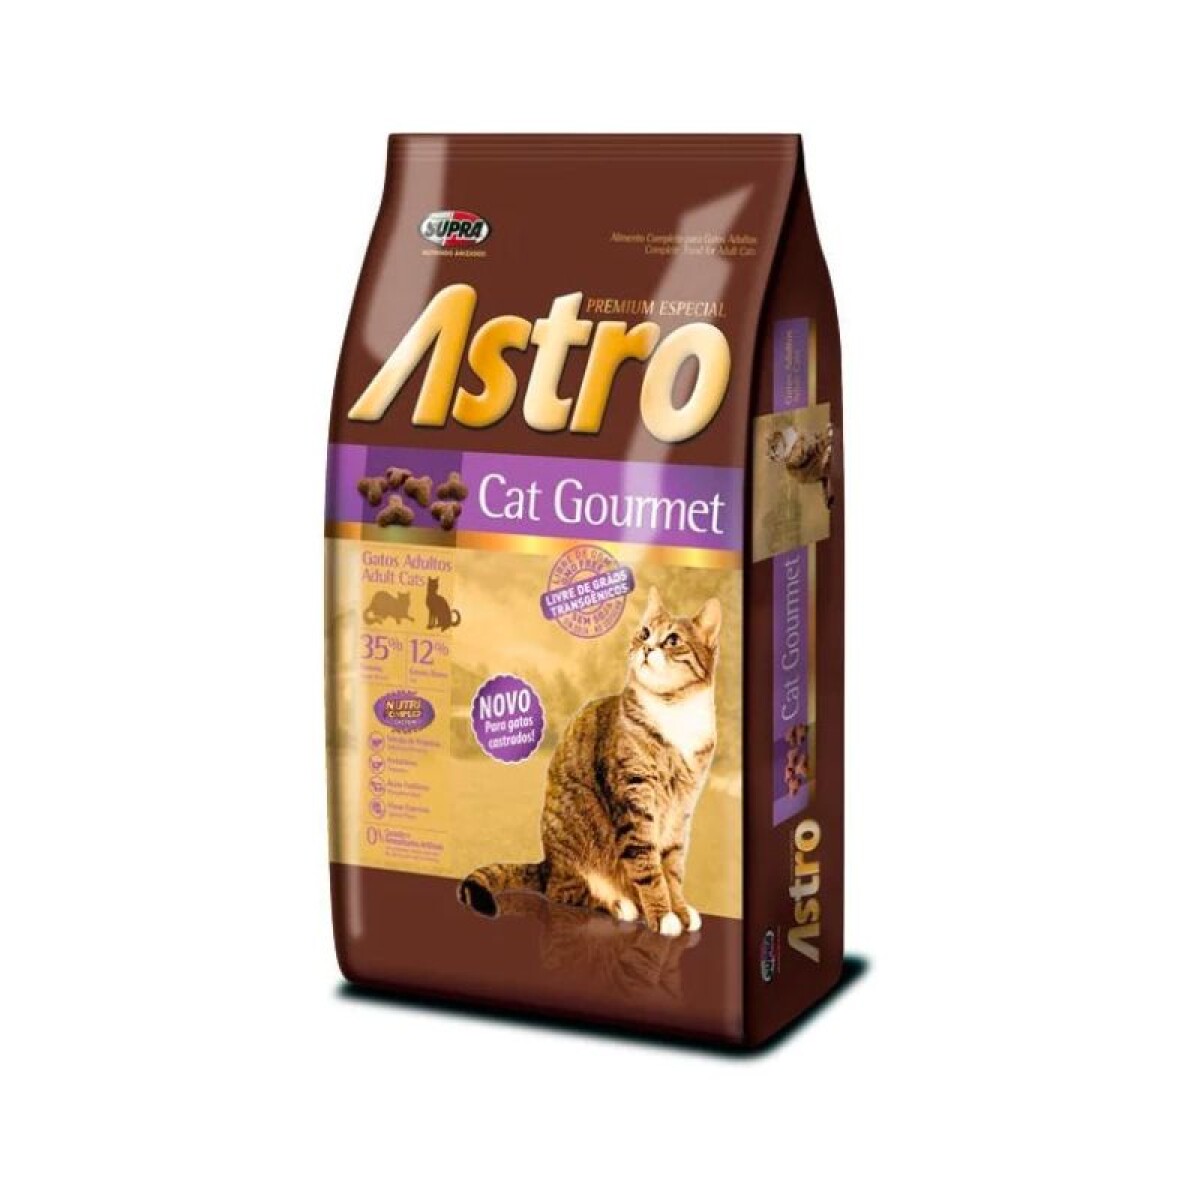 ASTRO CAT GOURMET 10KG - Astro Cat Gourmet 10kg 